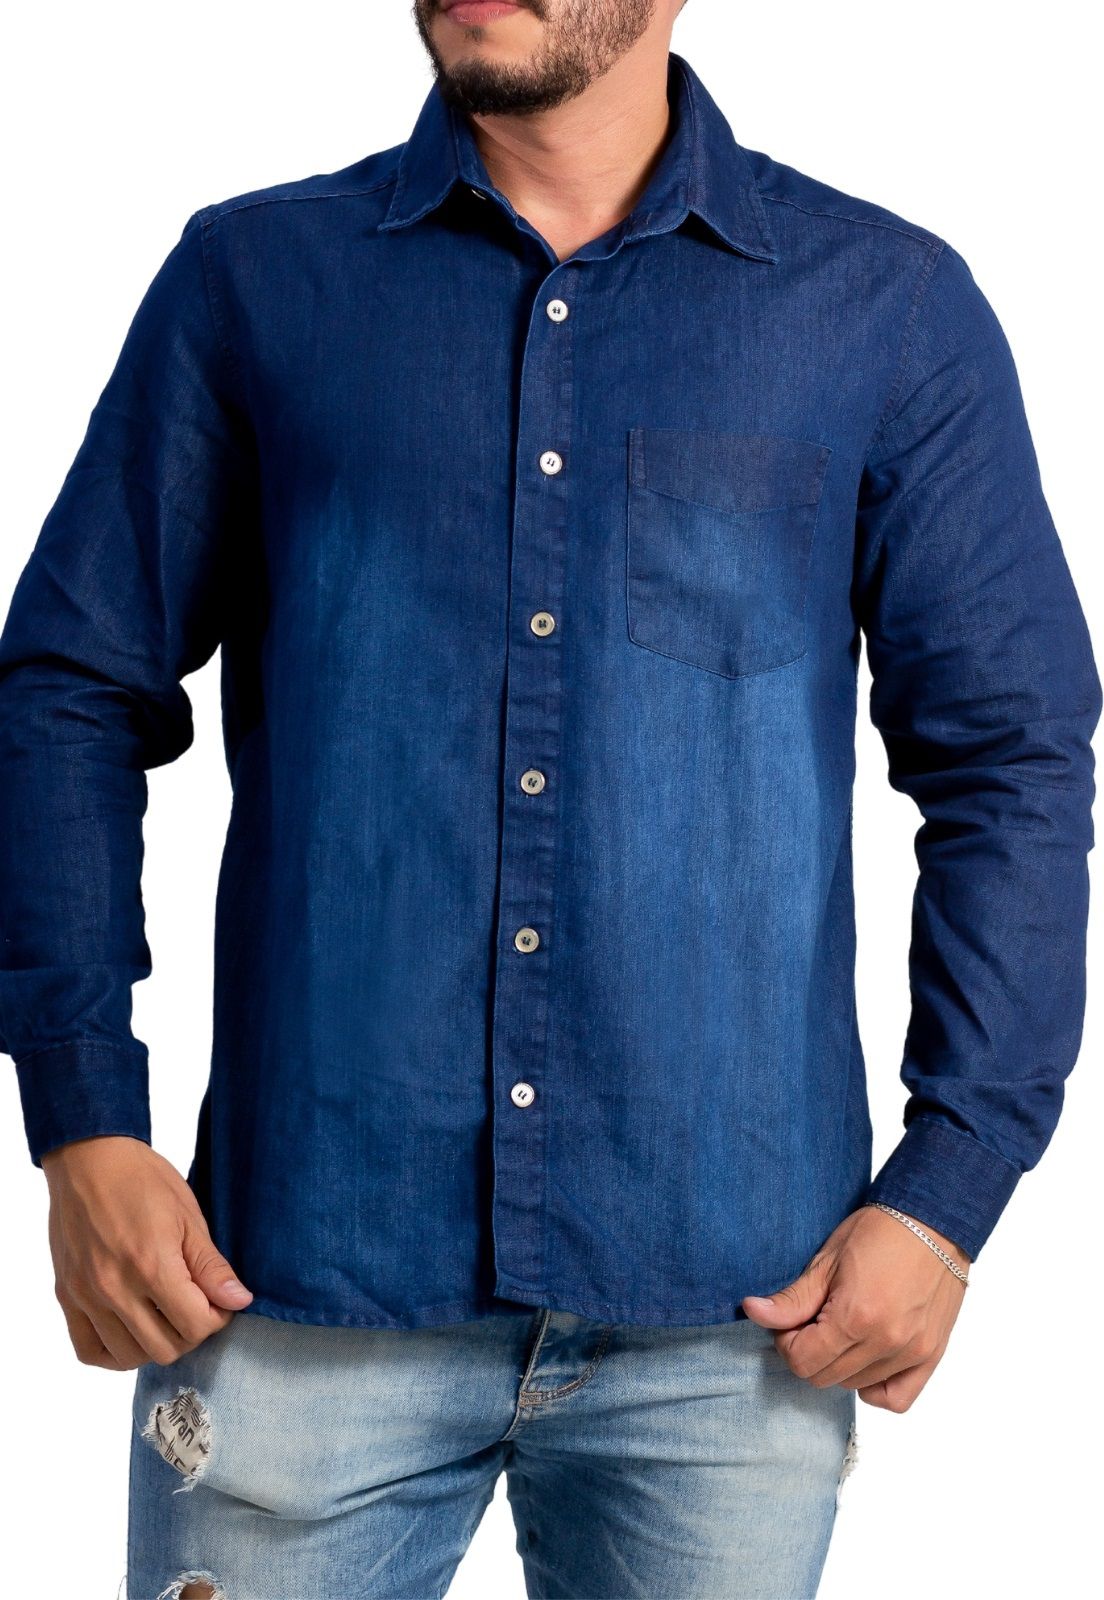 Camisa Jeans Manga Longa Adoro Bazar Pitt - Adoro Bazar| Produtos novos,  preços inacreditáveis, entrega garantida.